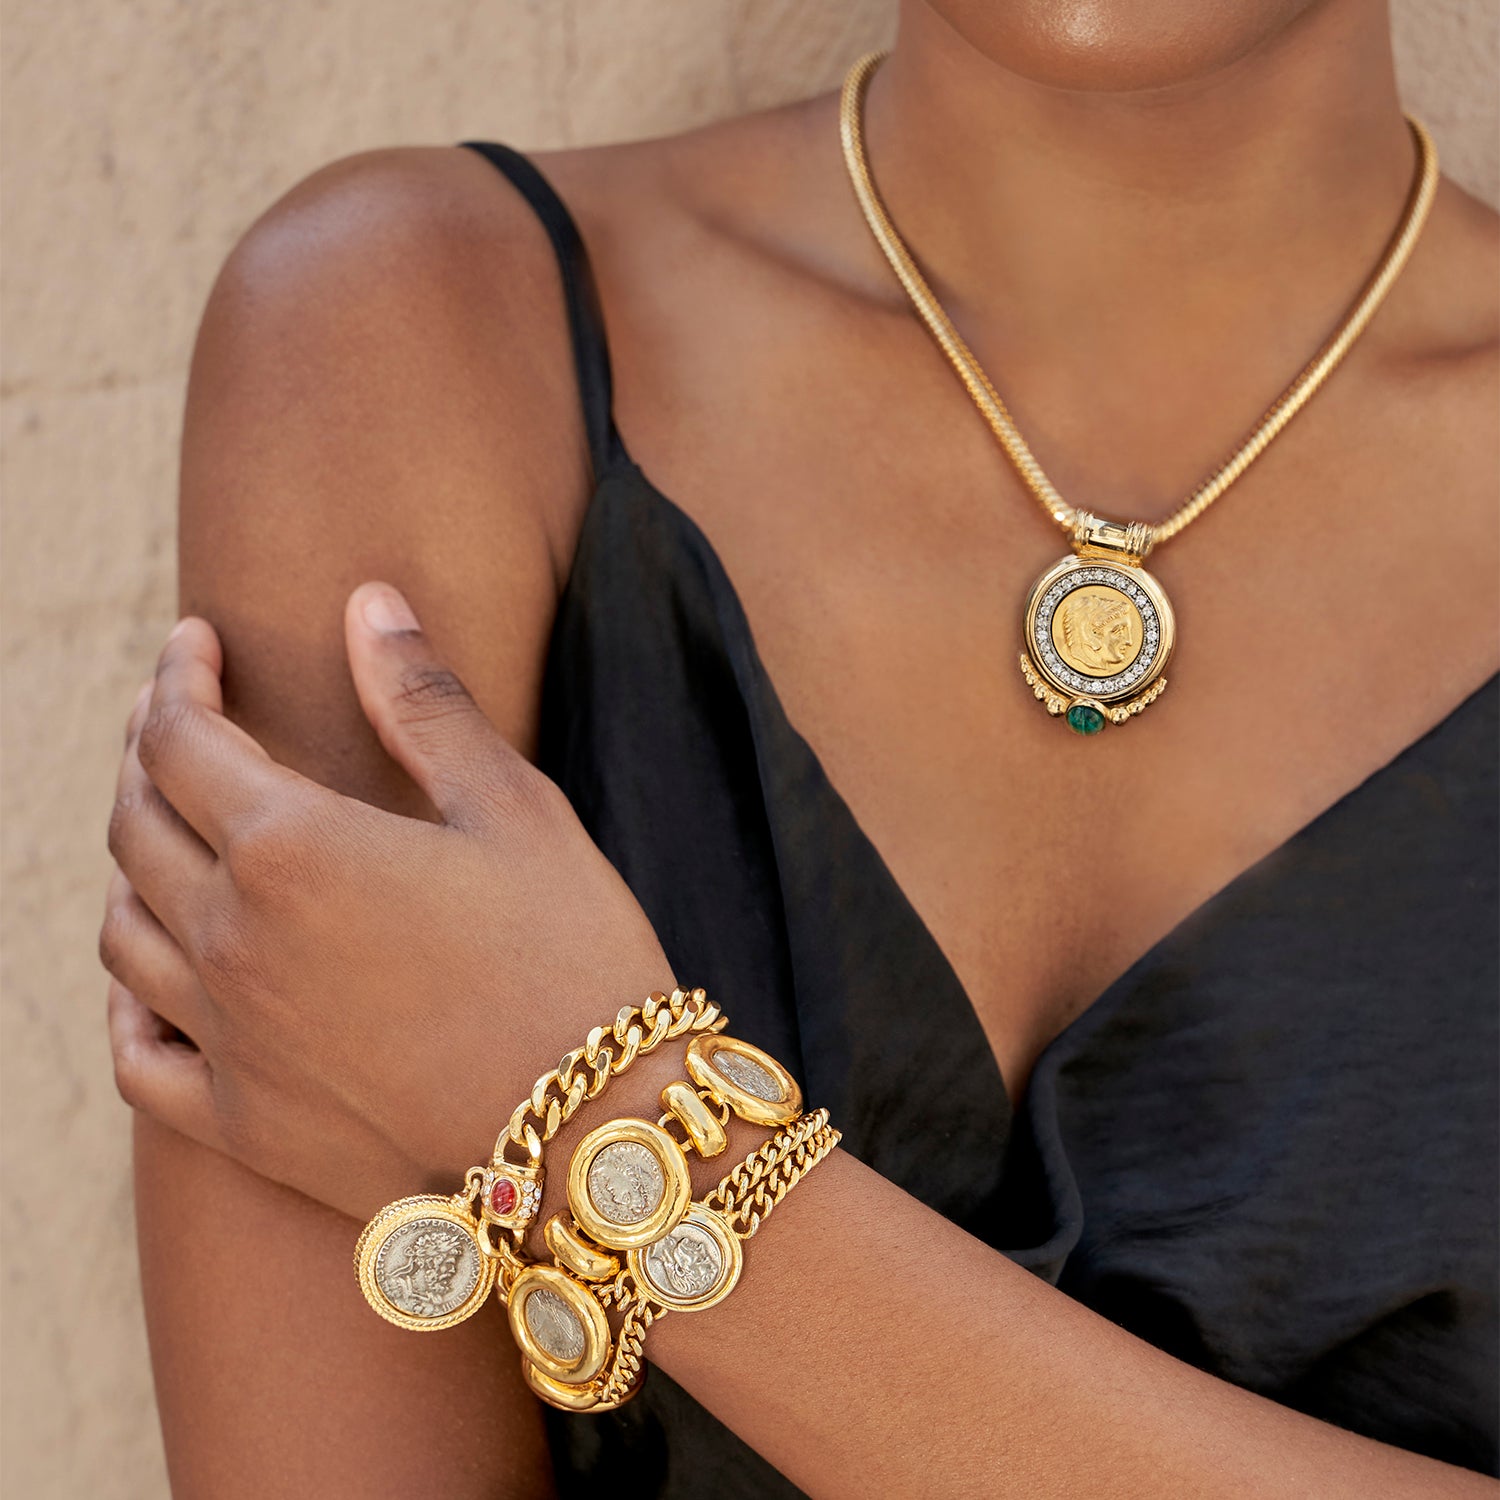 Shop Bridal Necklaces | Ben-Amun Jewelry